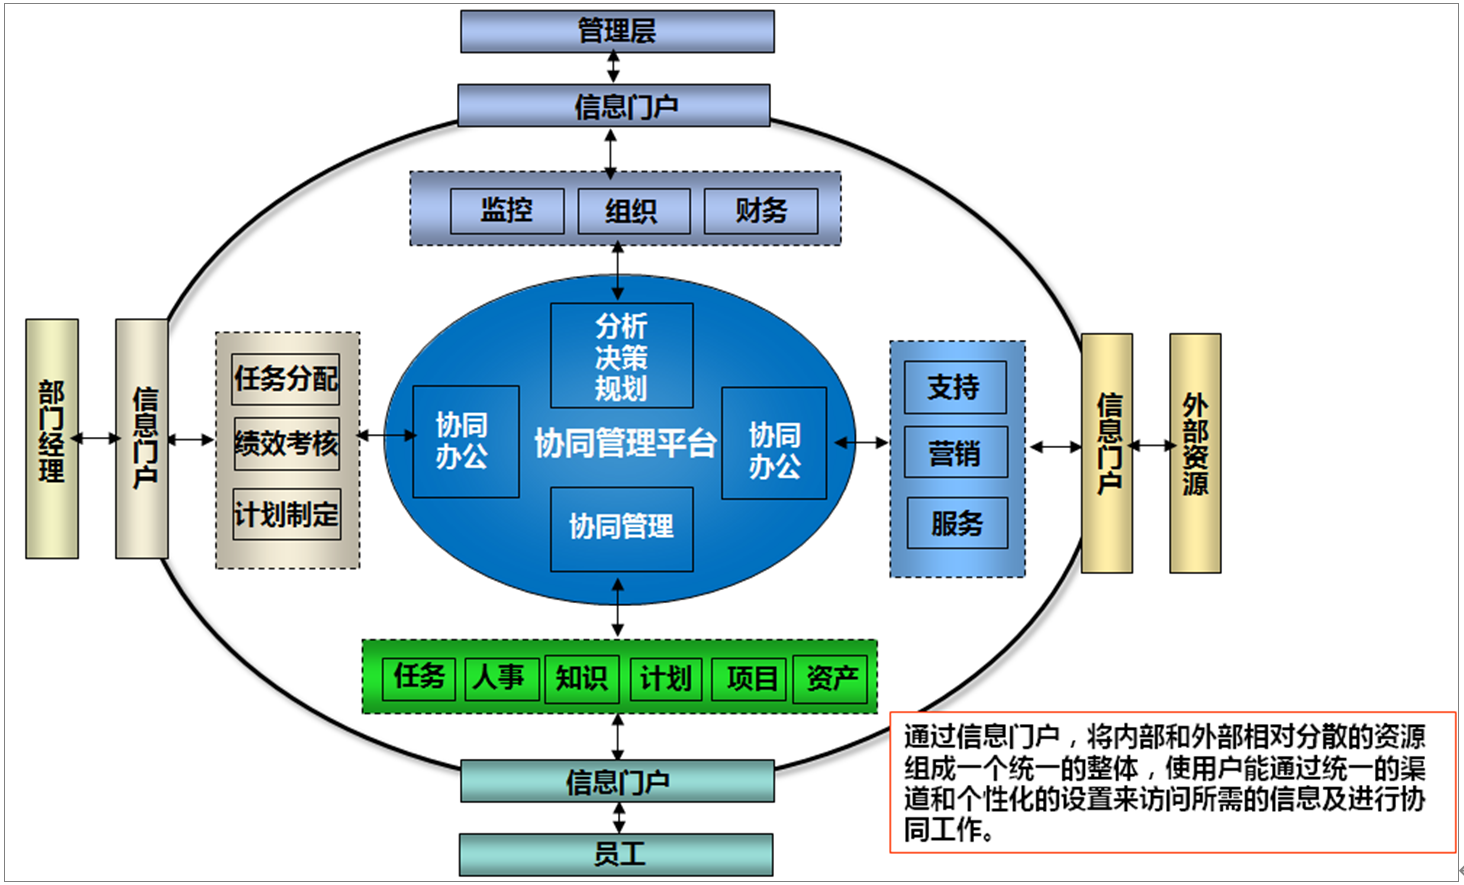 霞浦核电信息门户应用解决方案总体架构